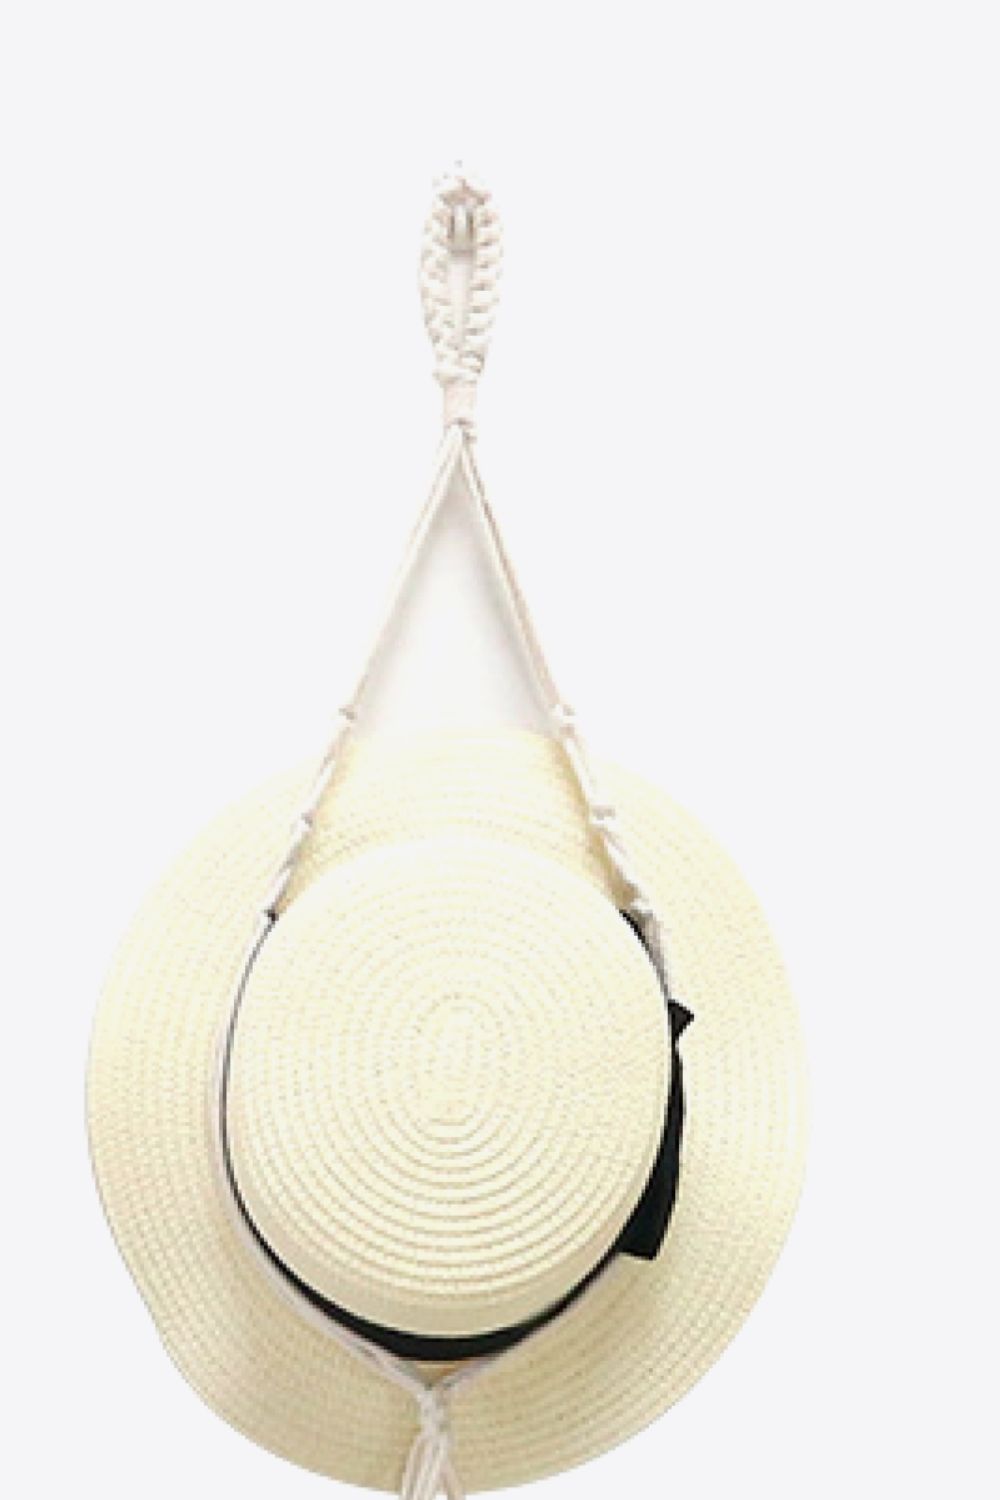 Beige Macrame Hat Hanger Sentient Beauty Fashions Home Decor